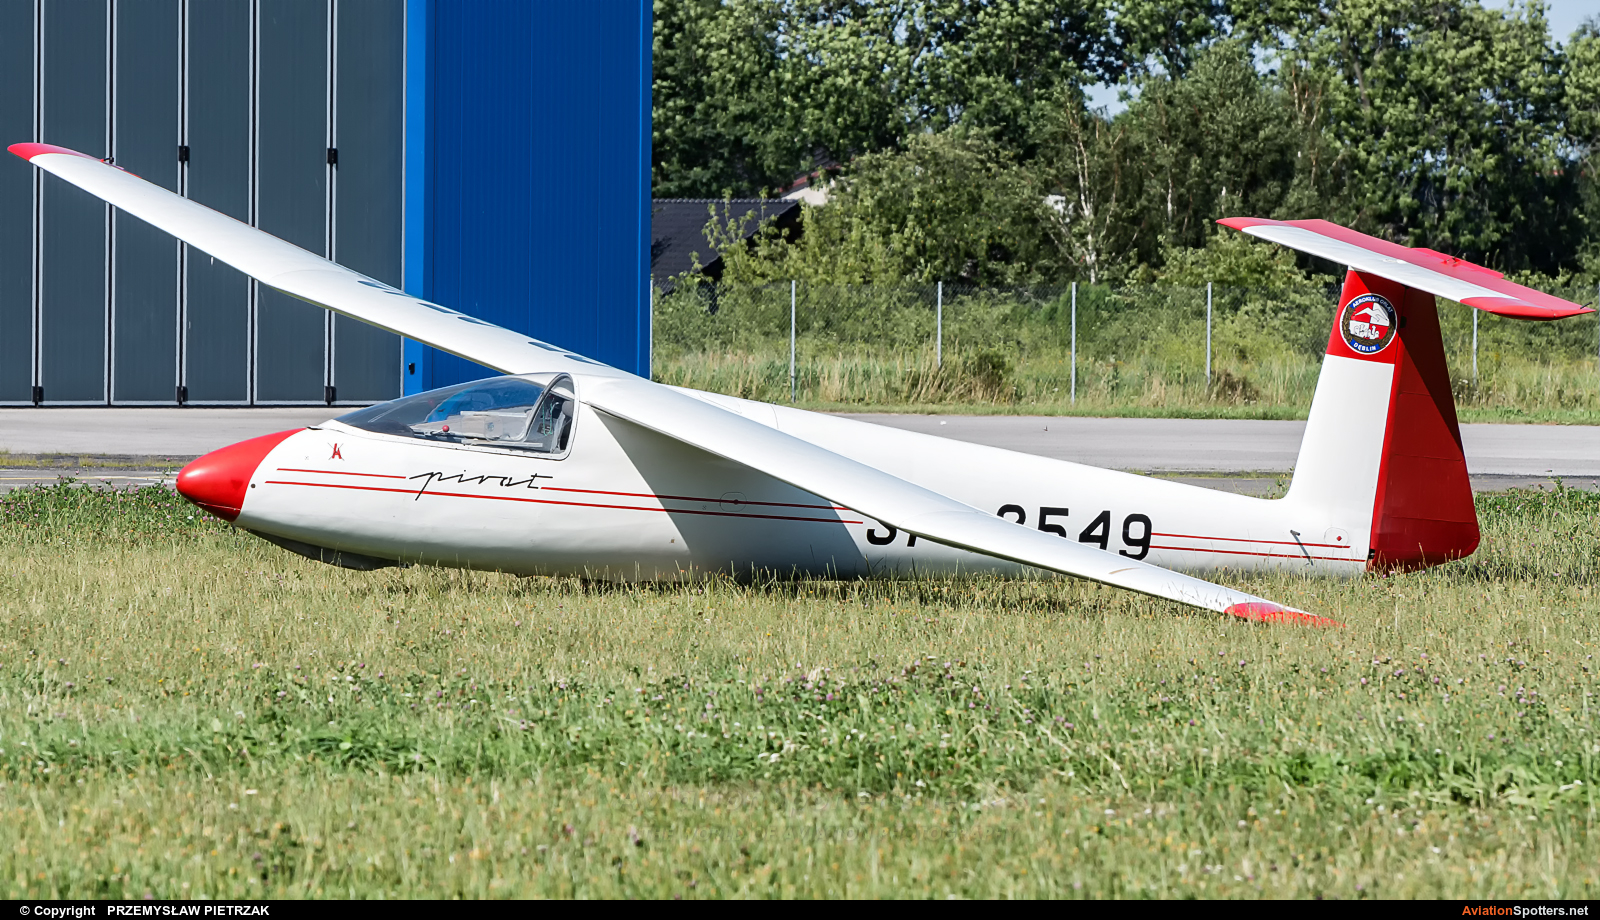 Aeroklub Orląt  -  SZD-30 Pirat  (SP-2549) By PRZEMYSŁAW PIETRZAK (PEPE74)